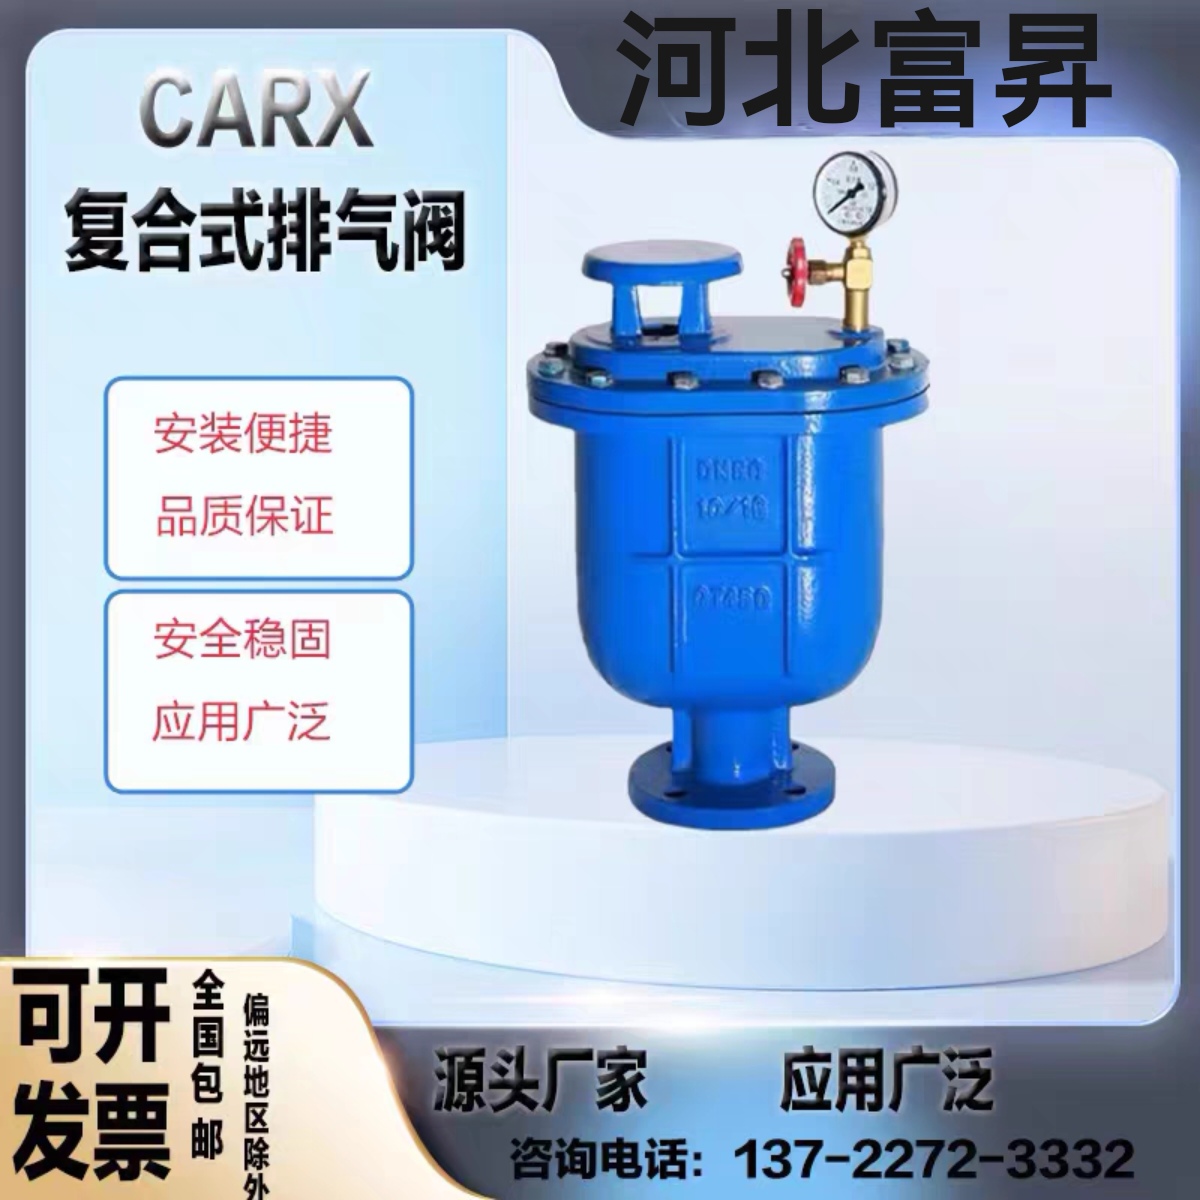 厂家直销CARX-复合式排气阀自来水排气阀法兰自动快速进排气阀